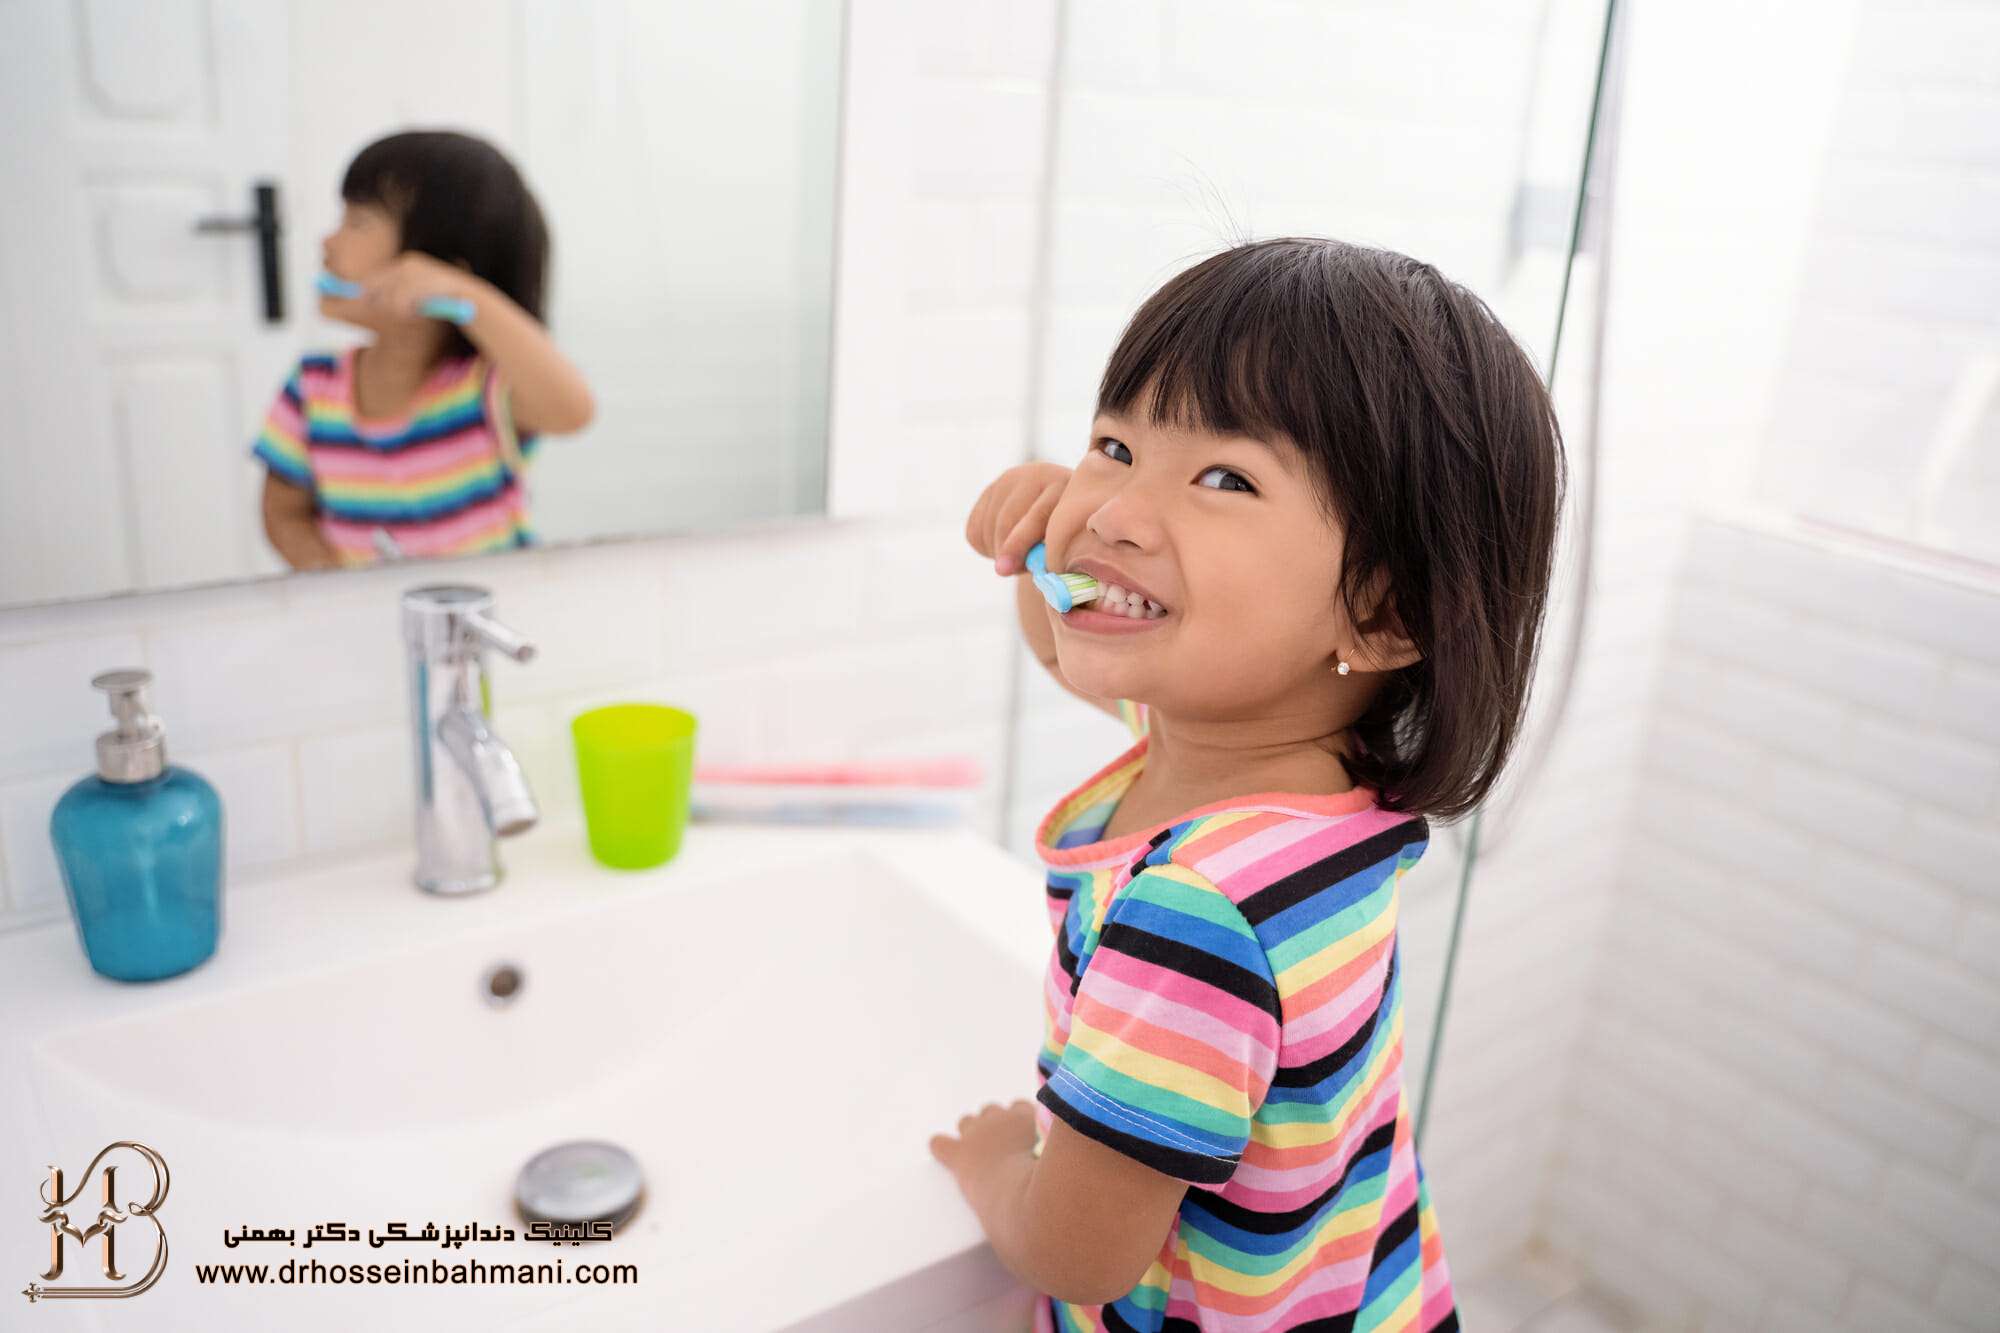  آموزش بهداشت دهان و دندان به کودکان 